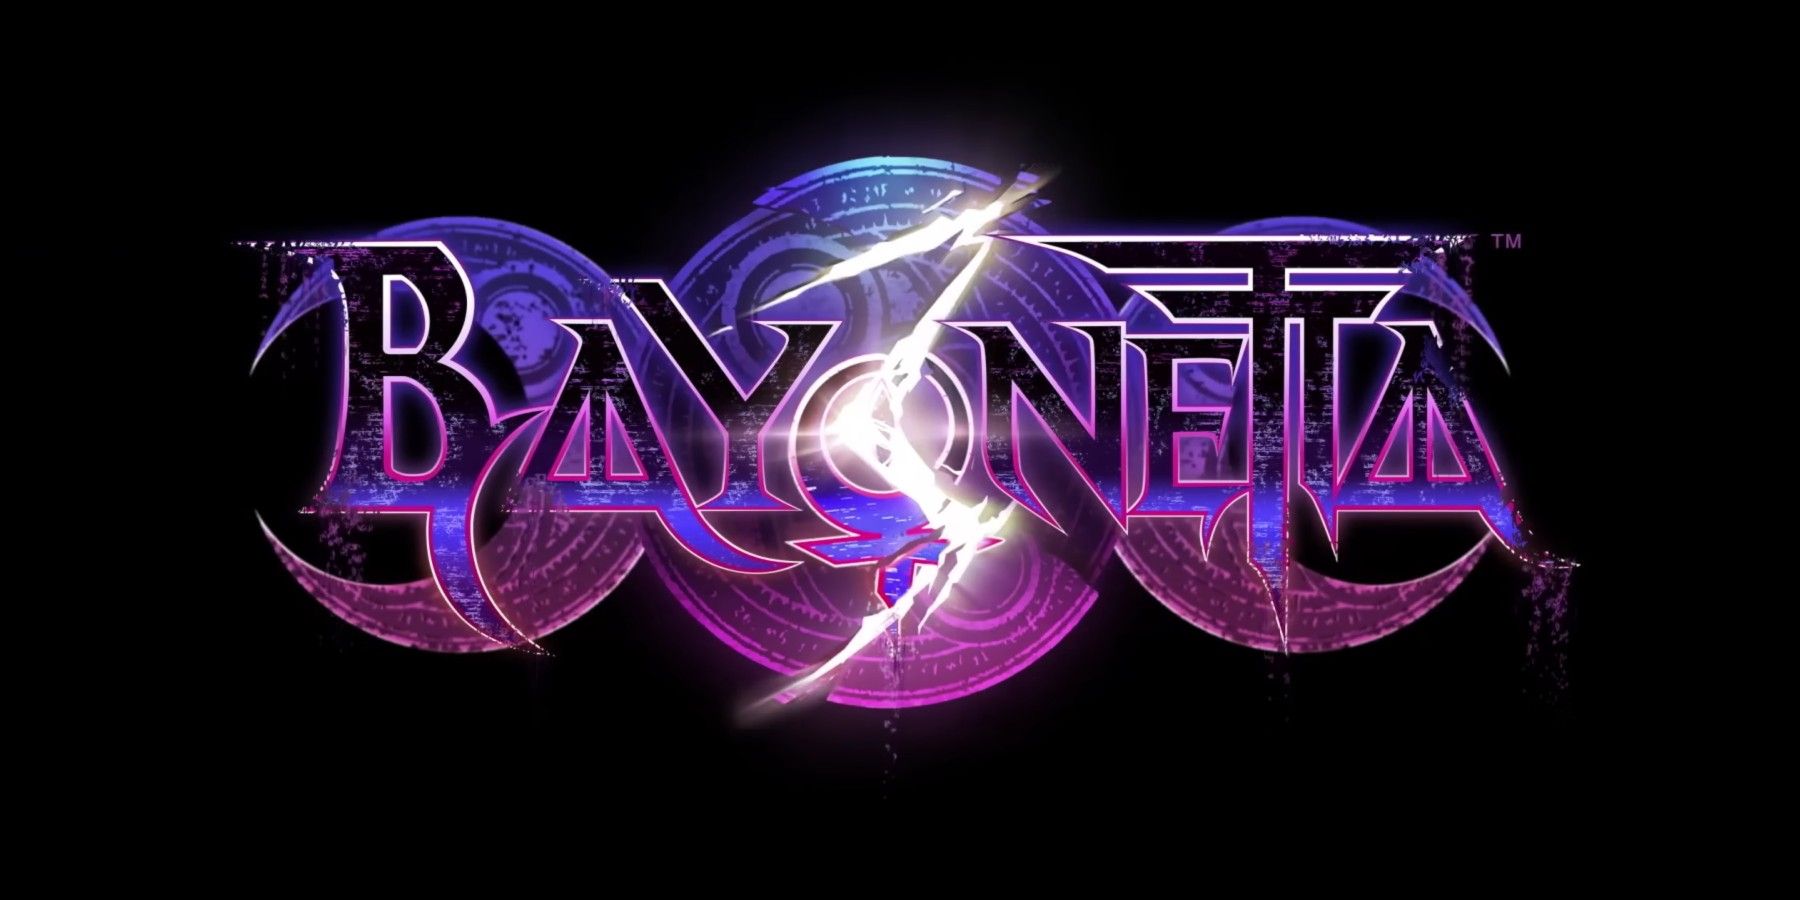 bayonetta 3 trailer title image